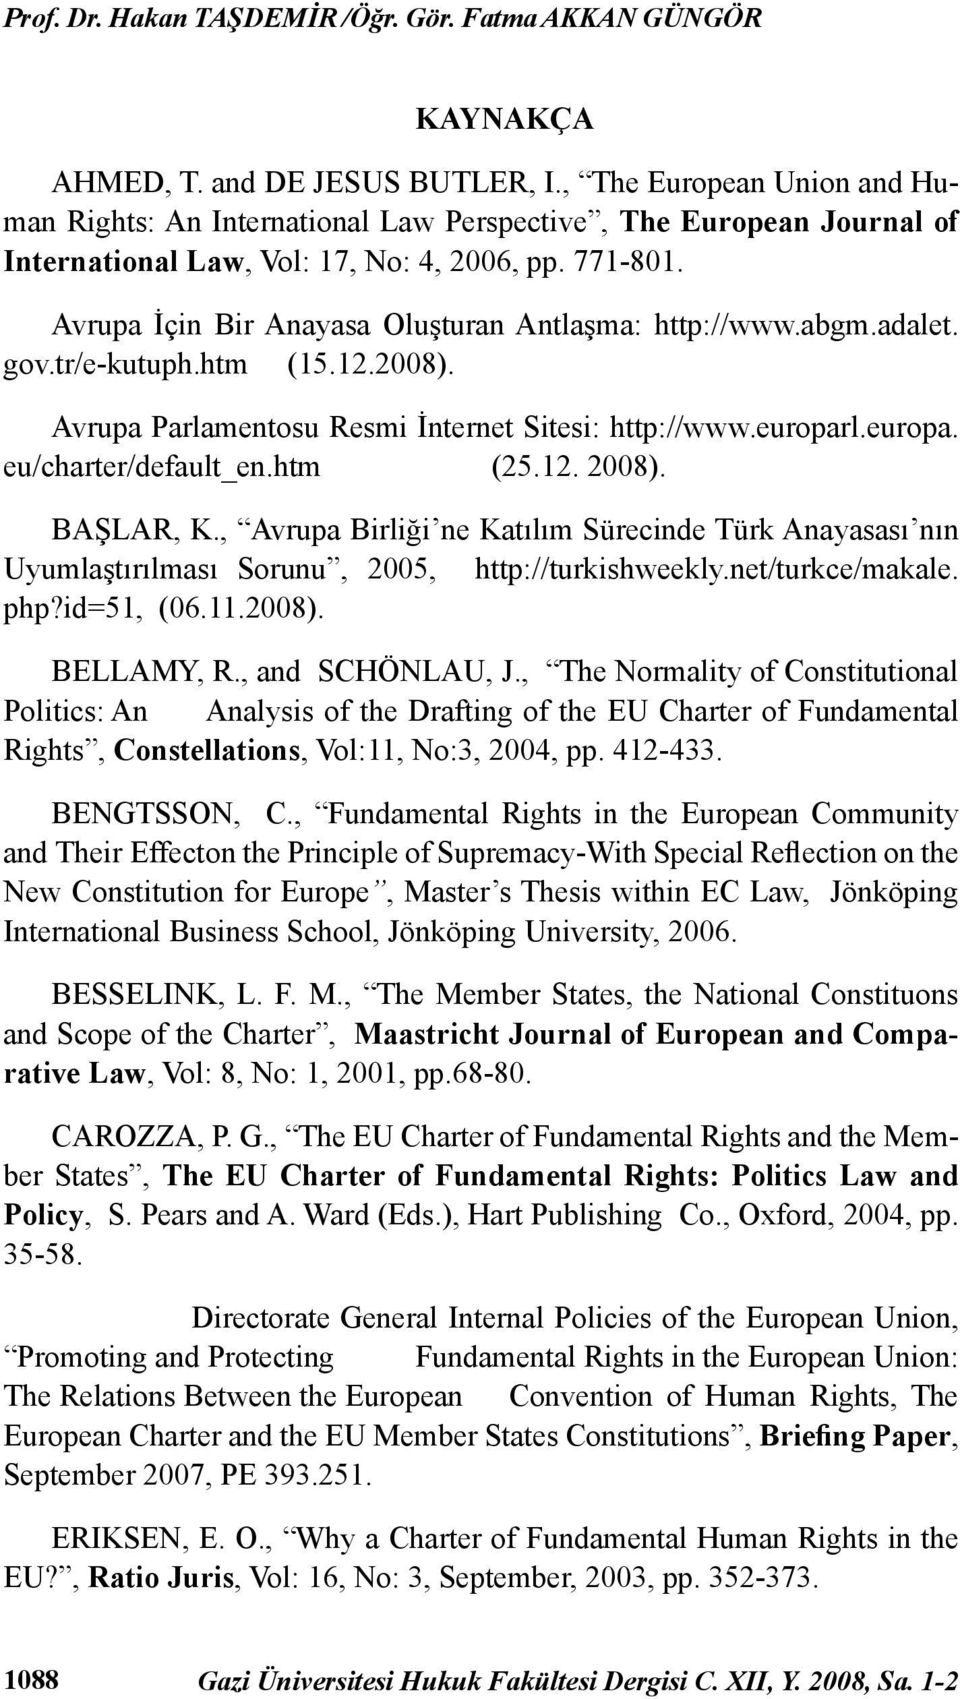 Avrupa İçin Bir Anayasa Oluşturan Antlaşma: http://www.abgm.adalet. gov.tr/e-kutuph.htm (15.12.2008). Avrupa Parlamentosu Resmi İnternet Sitesi: http://www.europarl.europa. eu/charter/default_en.